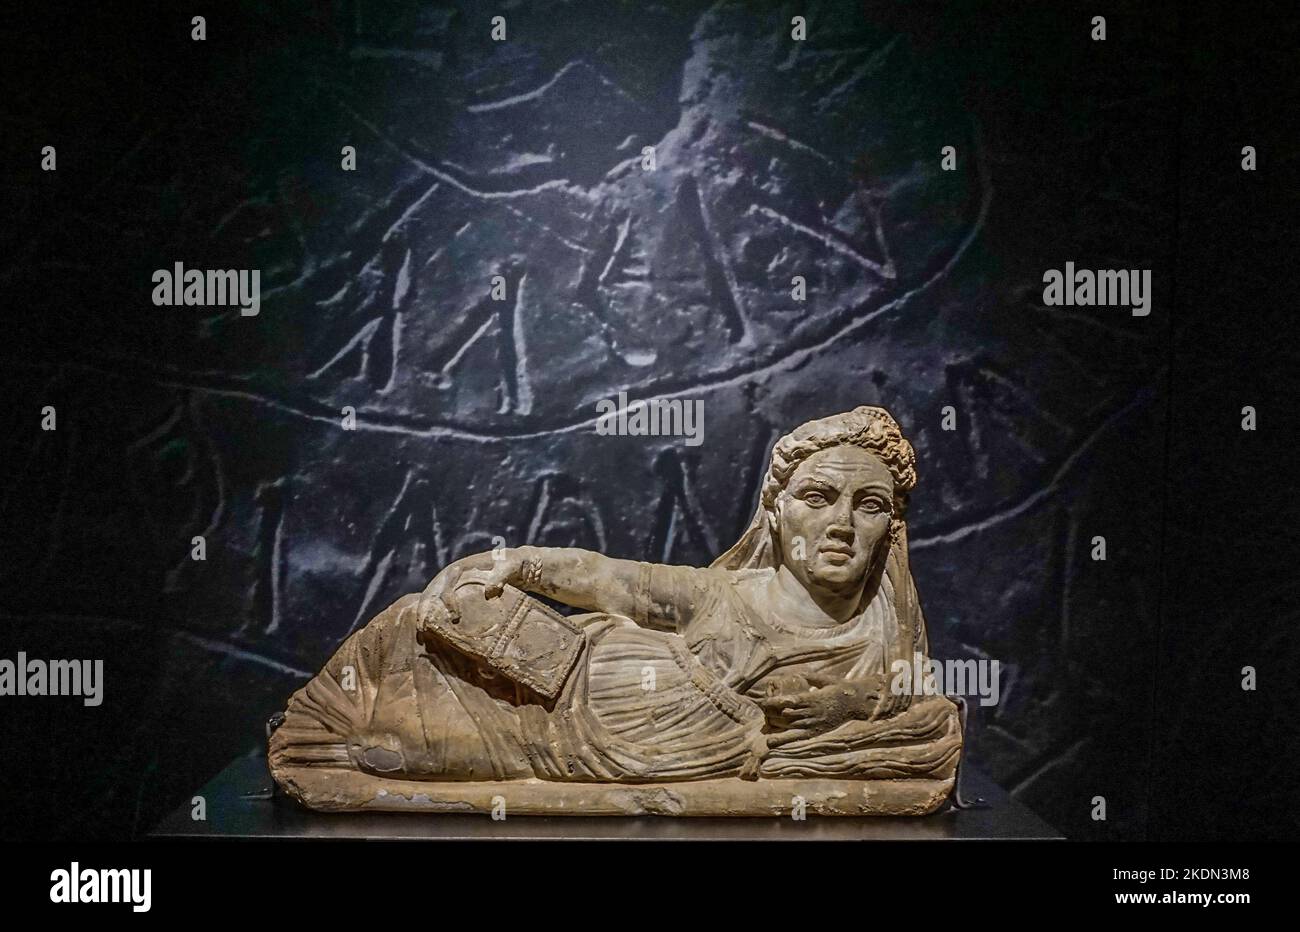 Etruskische Begräbnisurne einer verstorbenen Frau, ausgestellt im Museum für Römische Geschichte, Nimes Frankreich. Stockfoto